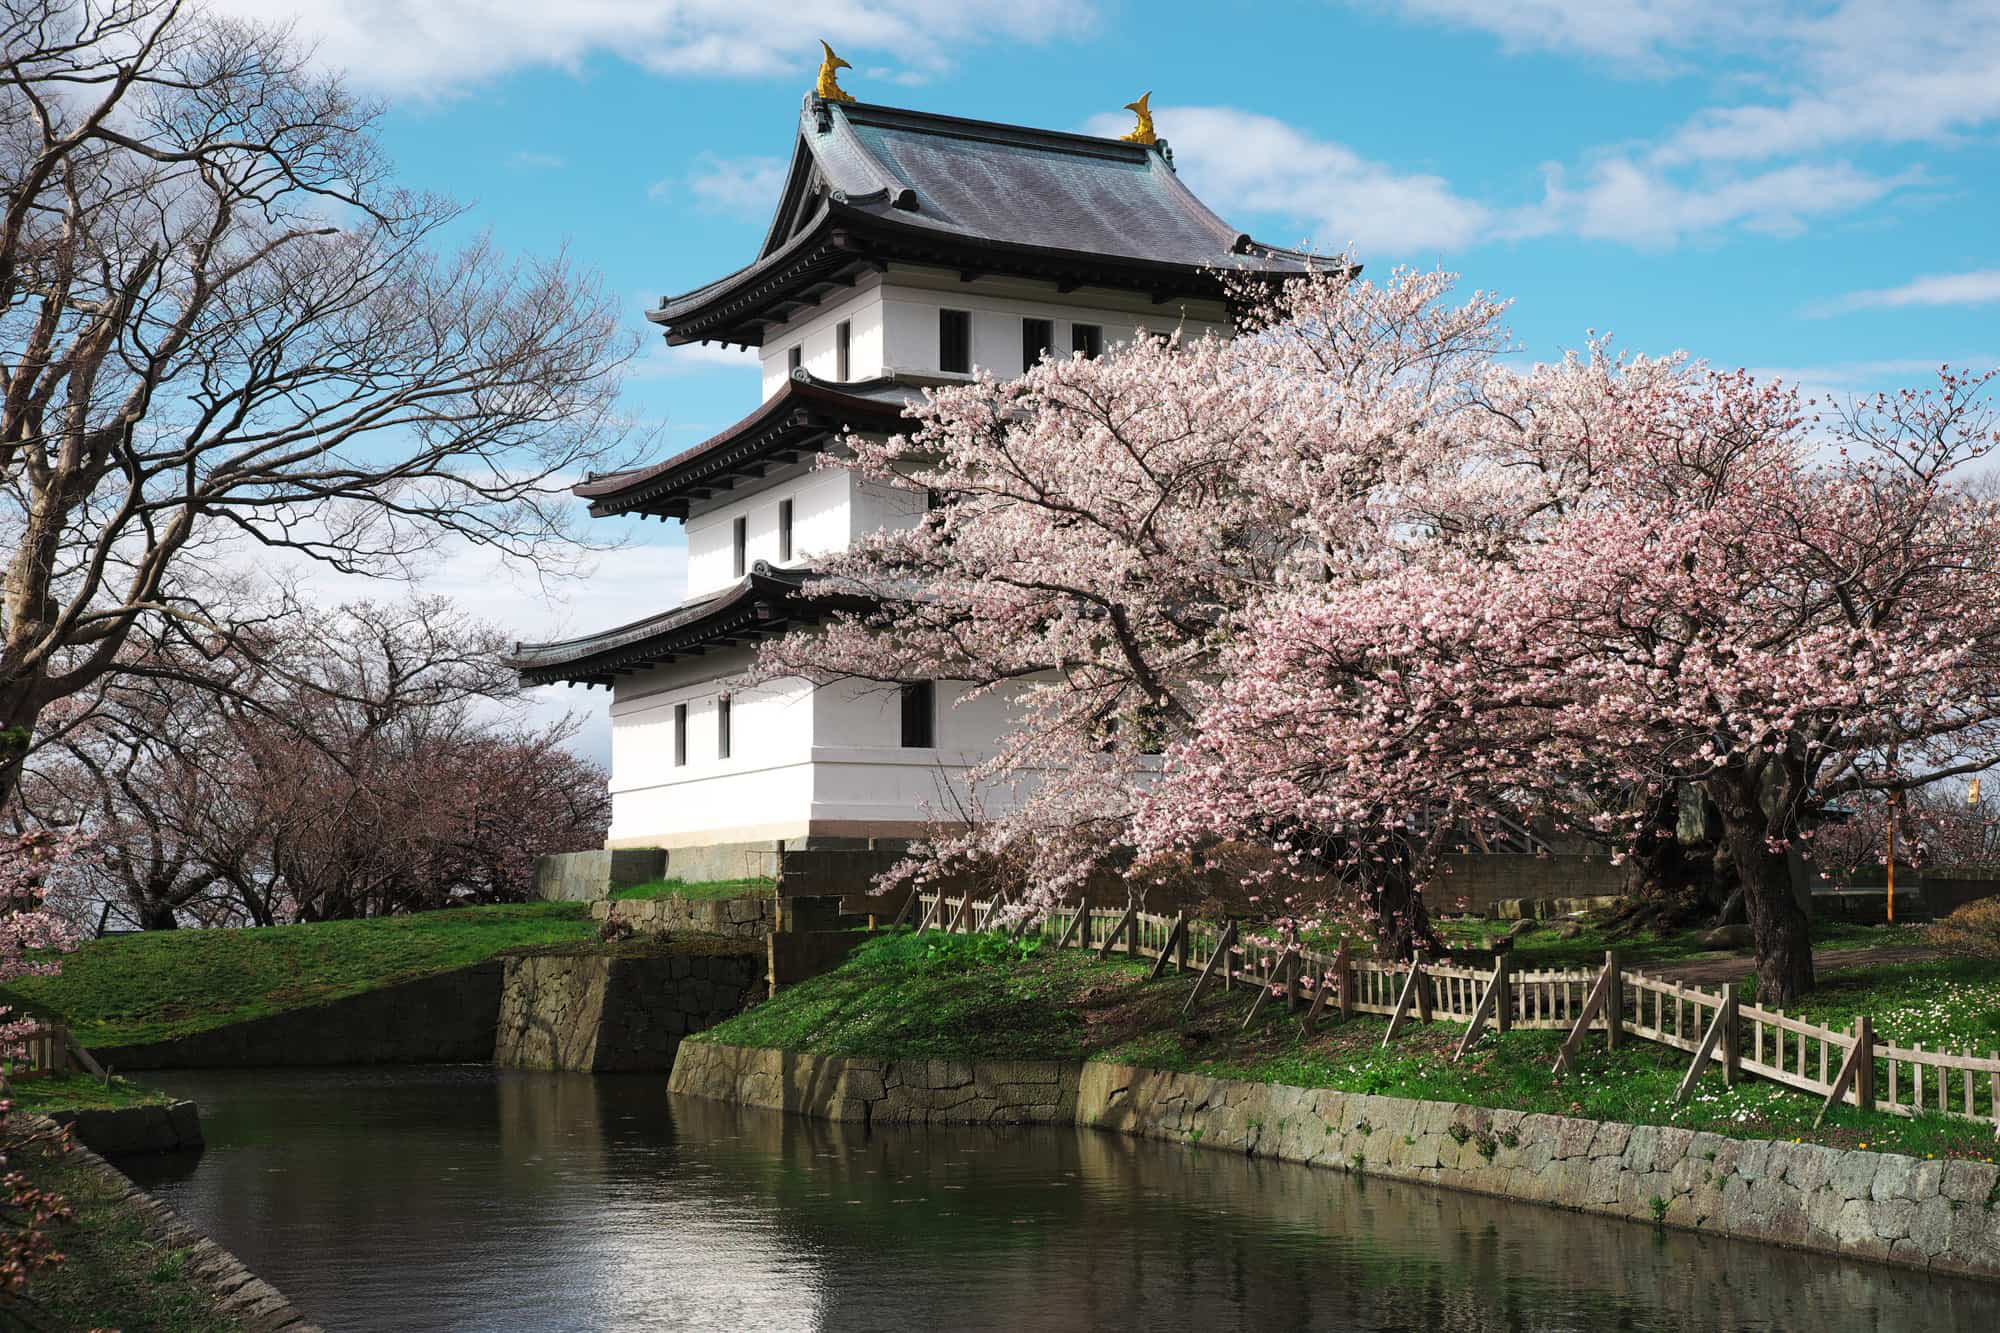 TOP các địa điểm ngắm hoa anh đào ở Nhật - Thái An Travel - 11